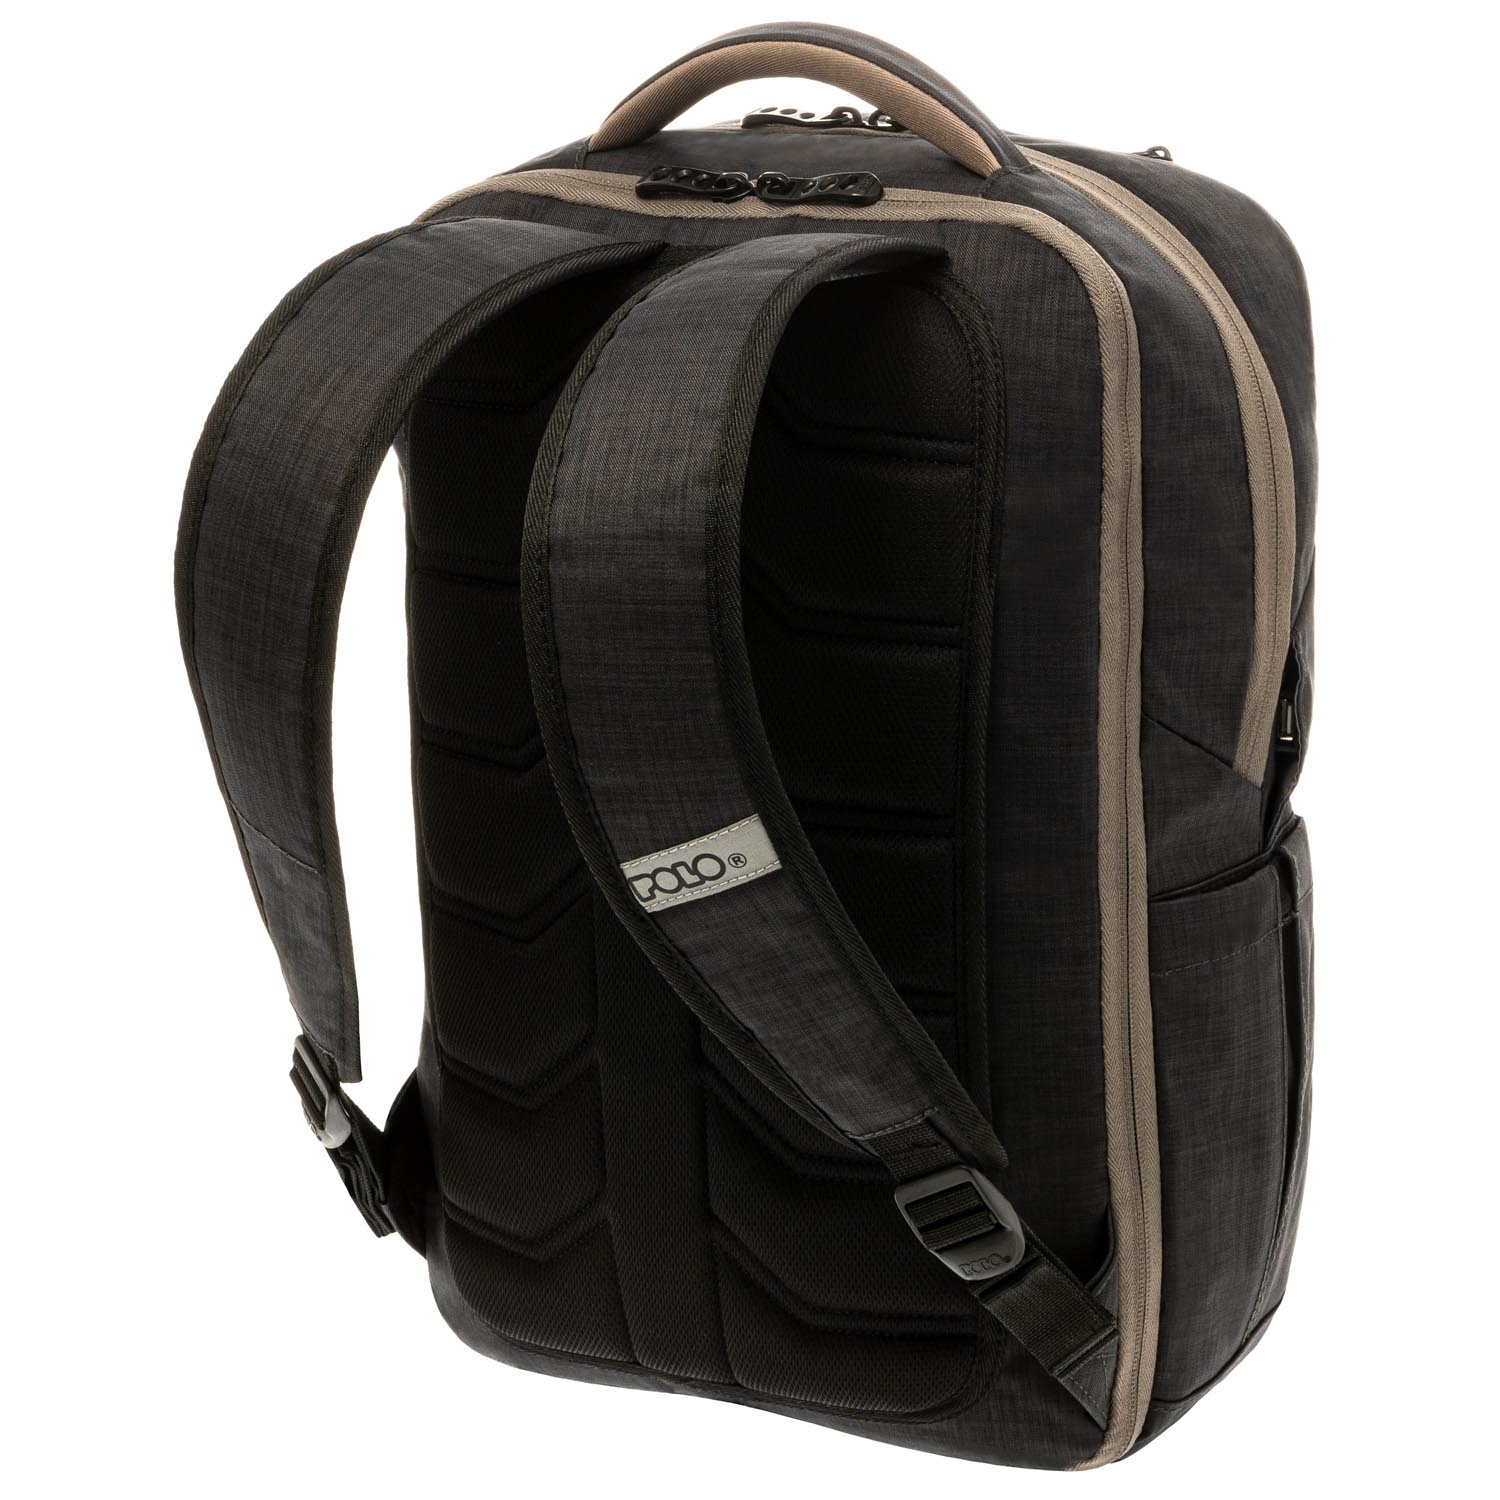 zenith polo backpack 902036 2100 01